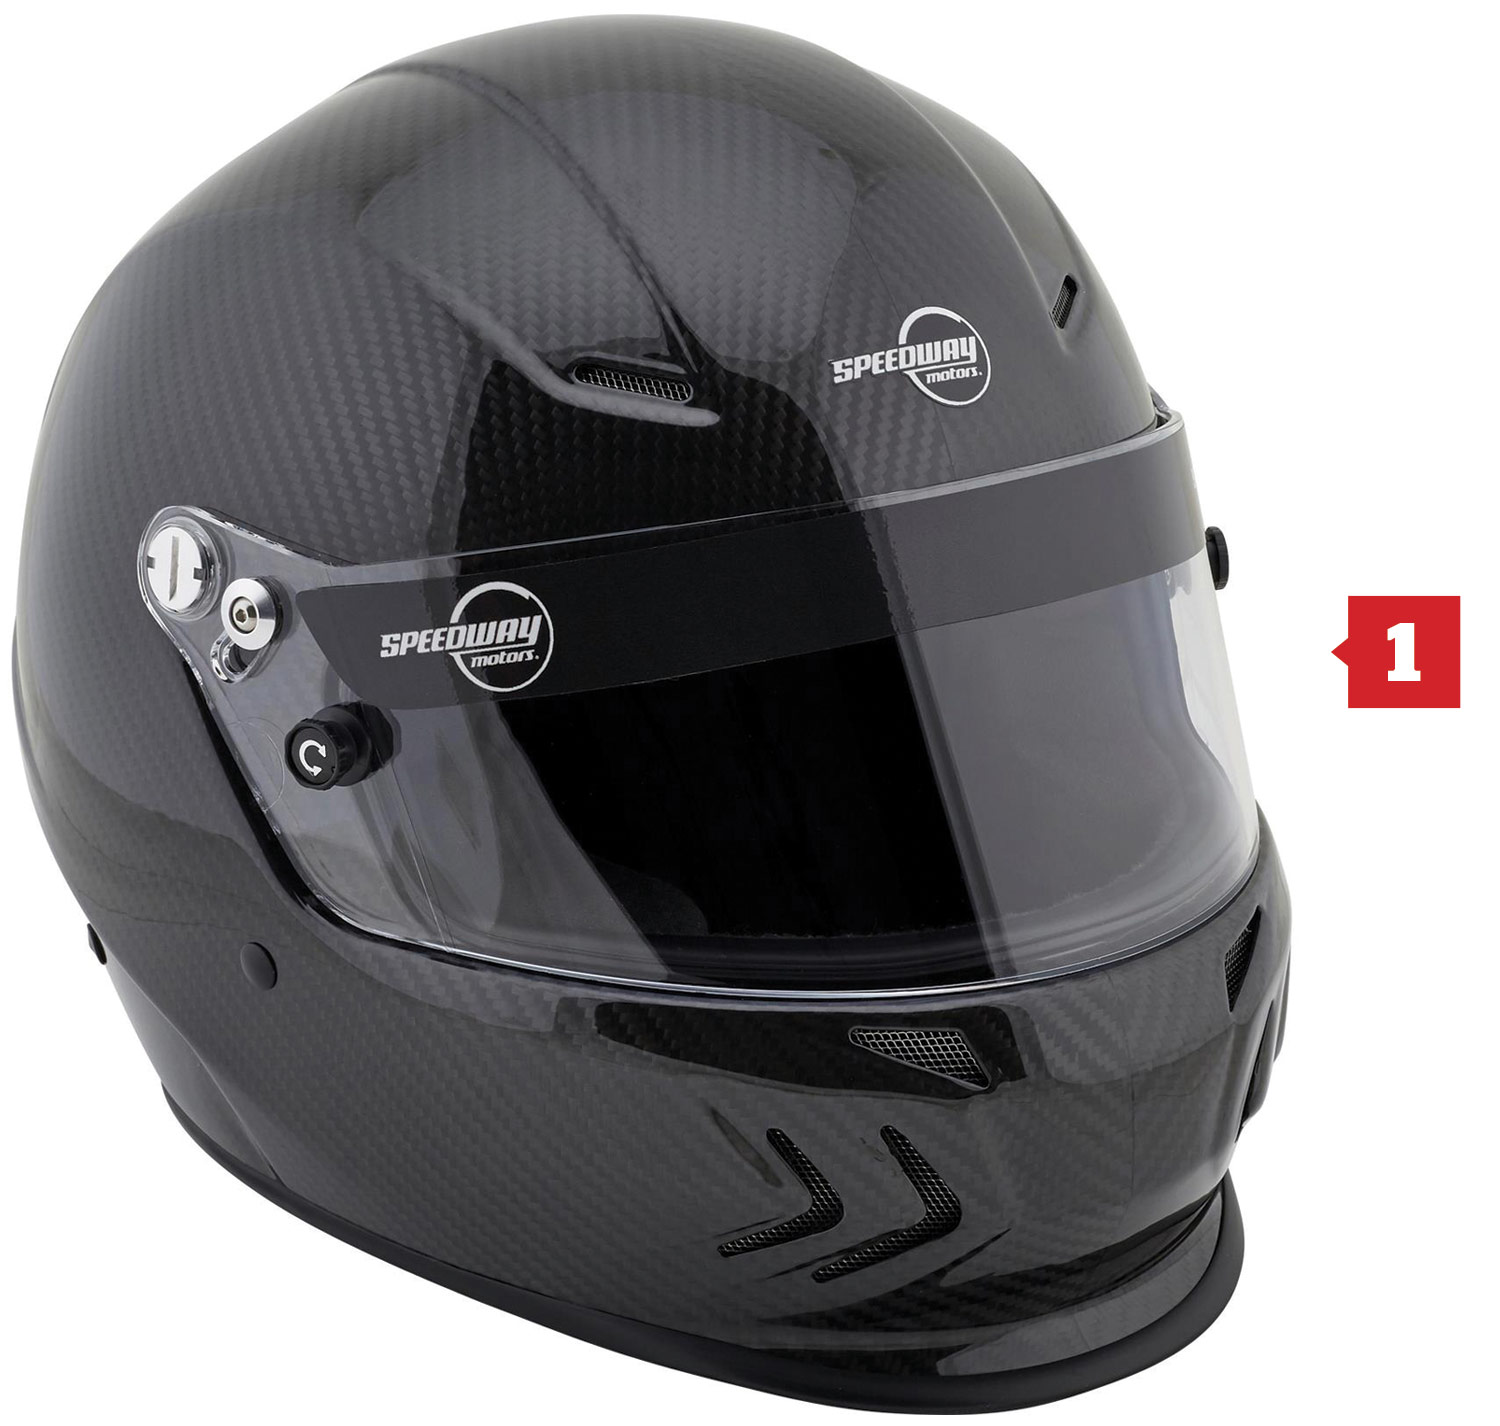 Speedway Motors SA2020 Lightweight Racing Helmet